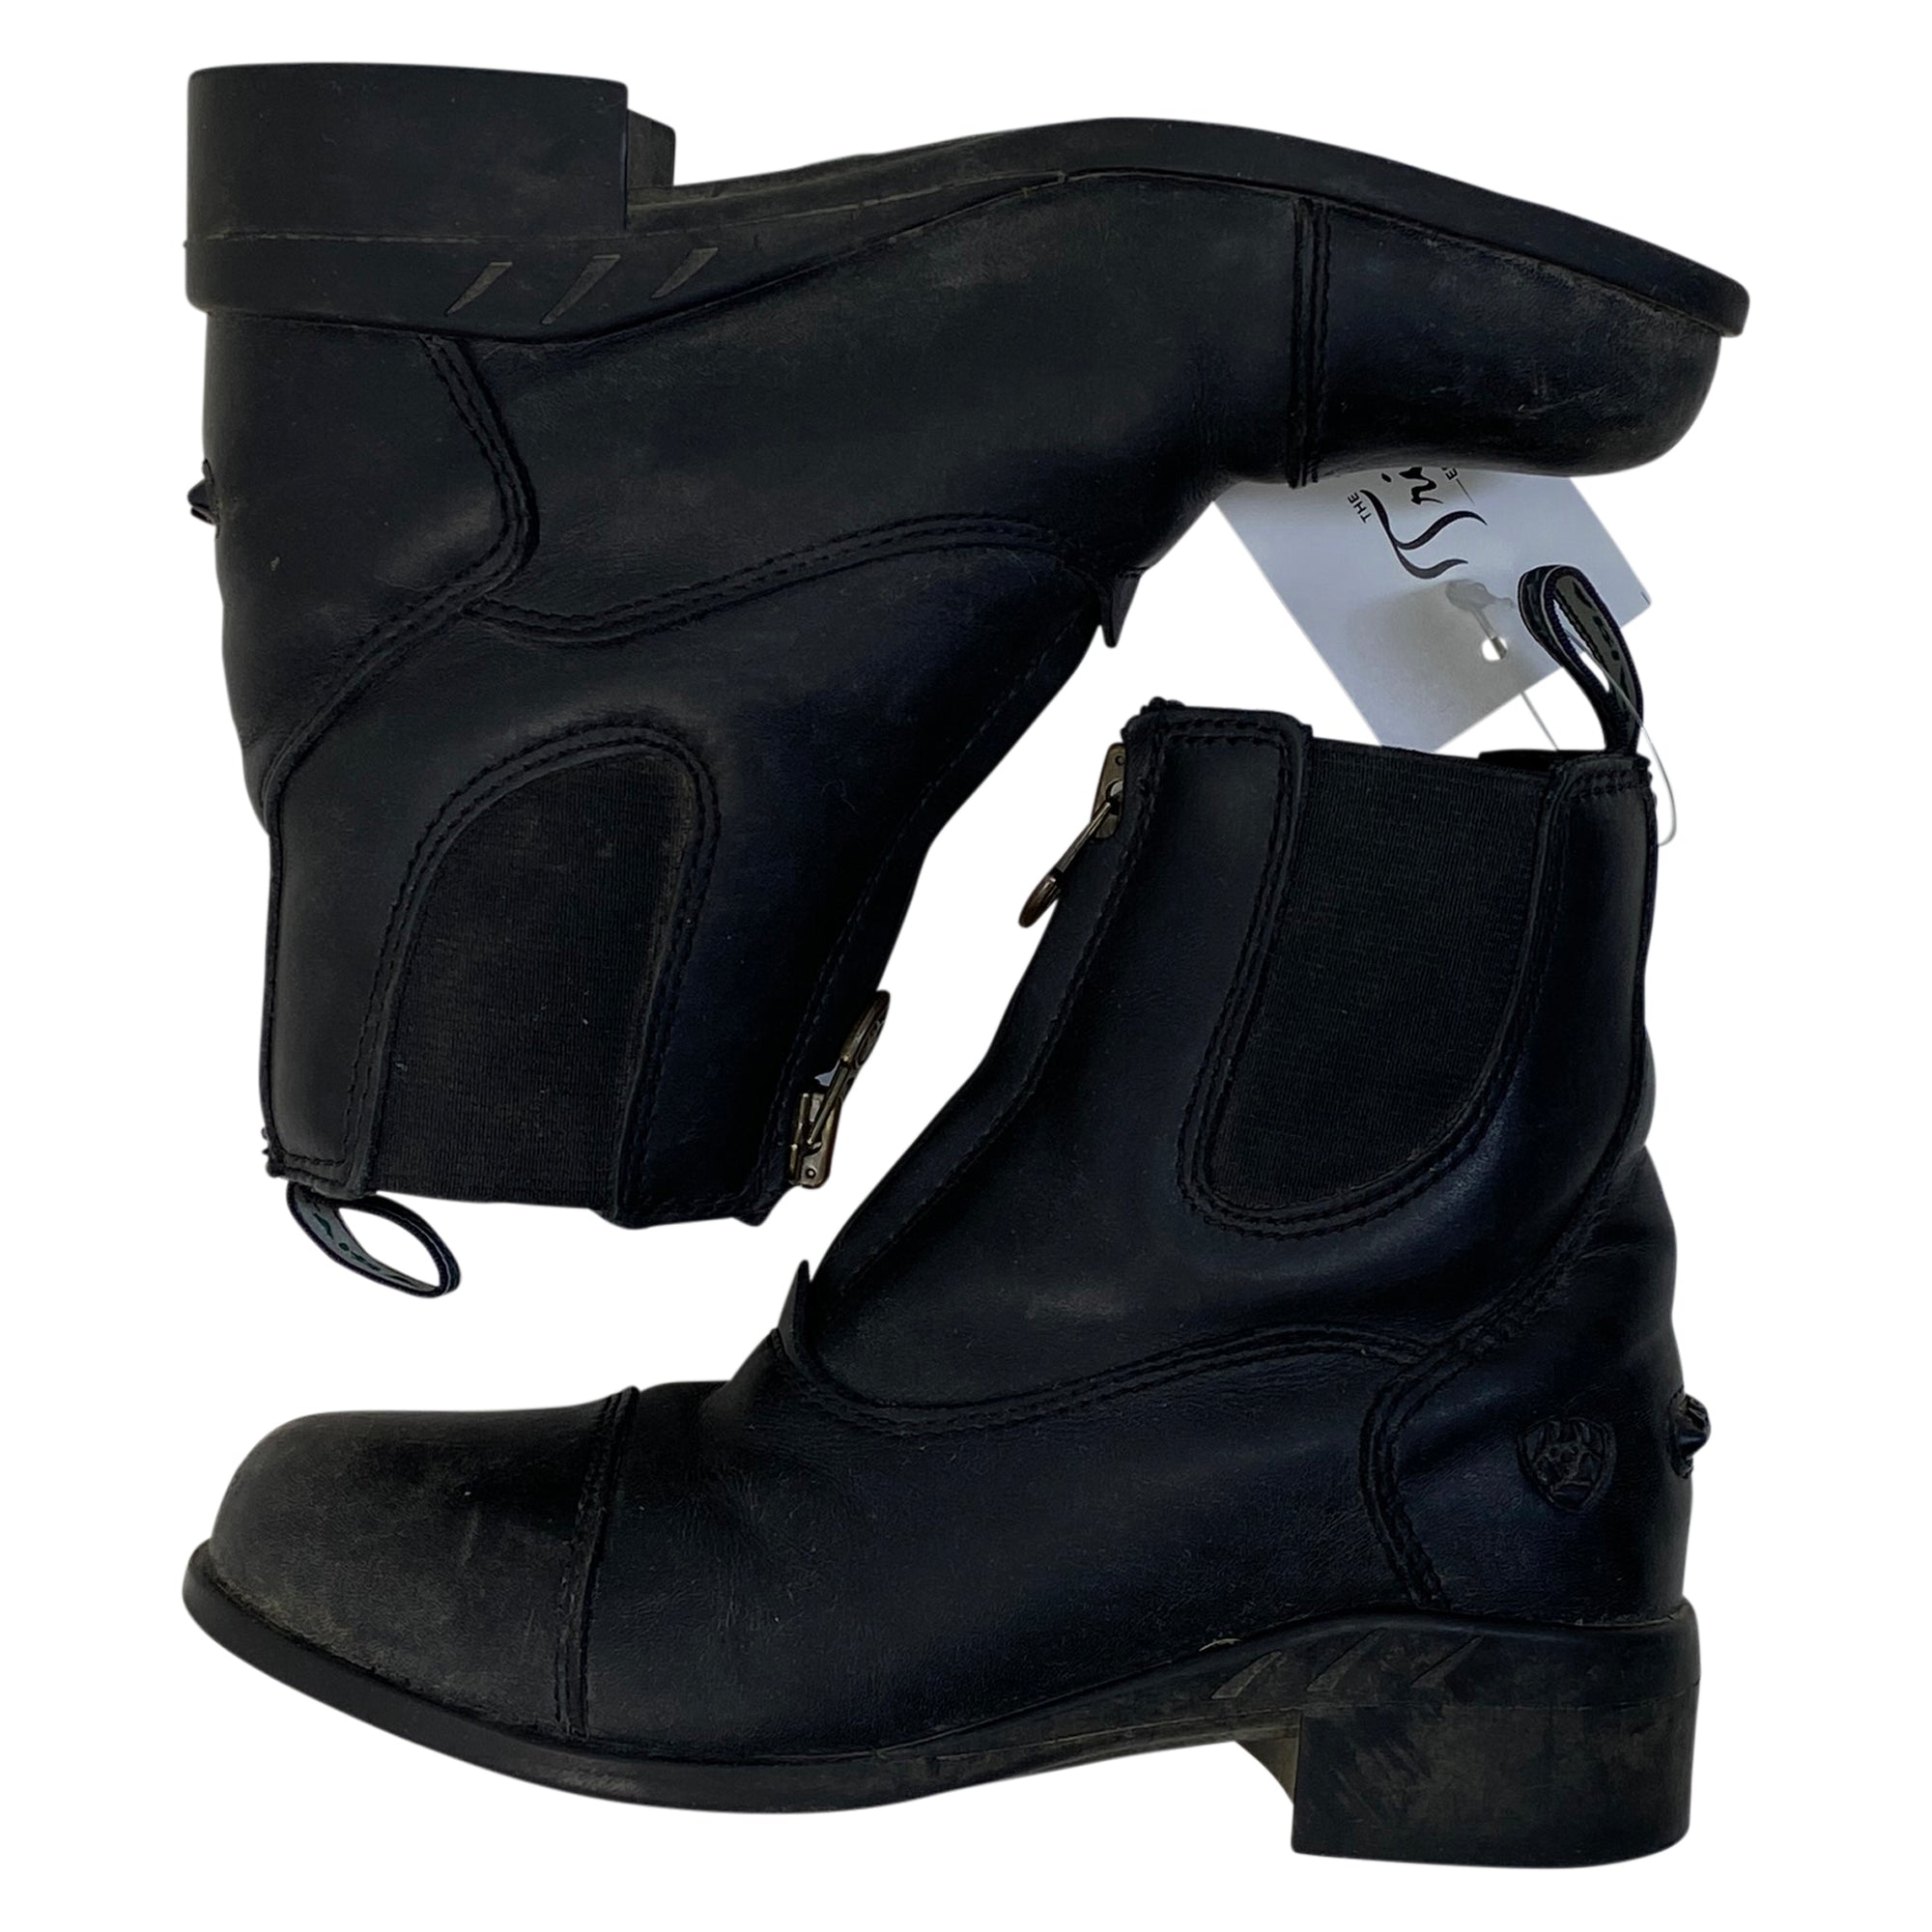 Ariat Devon IV Paddock Boots in Black 